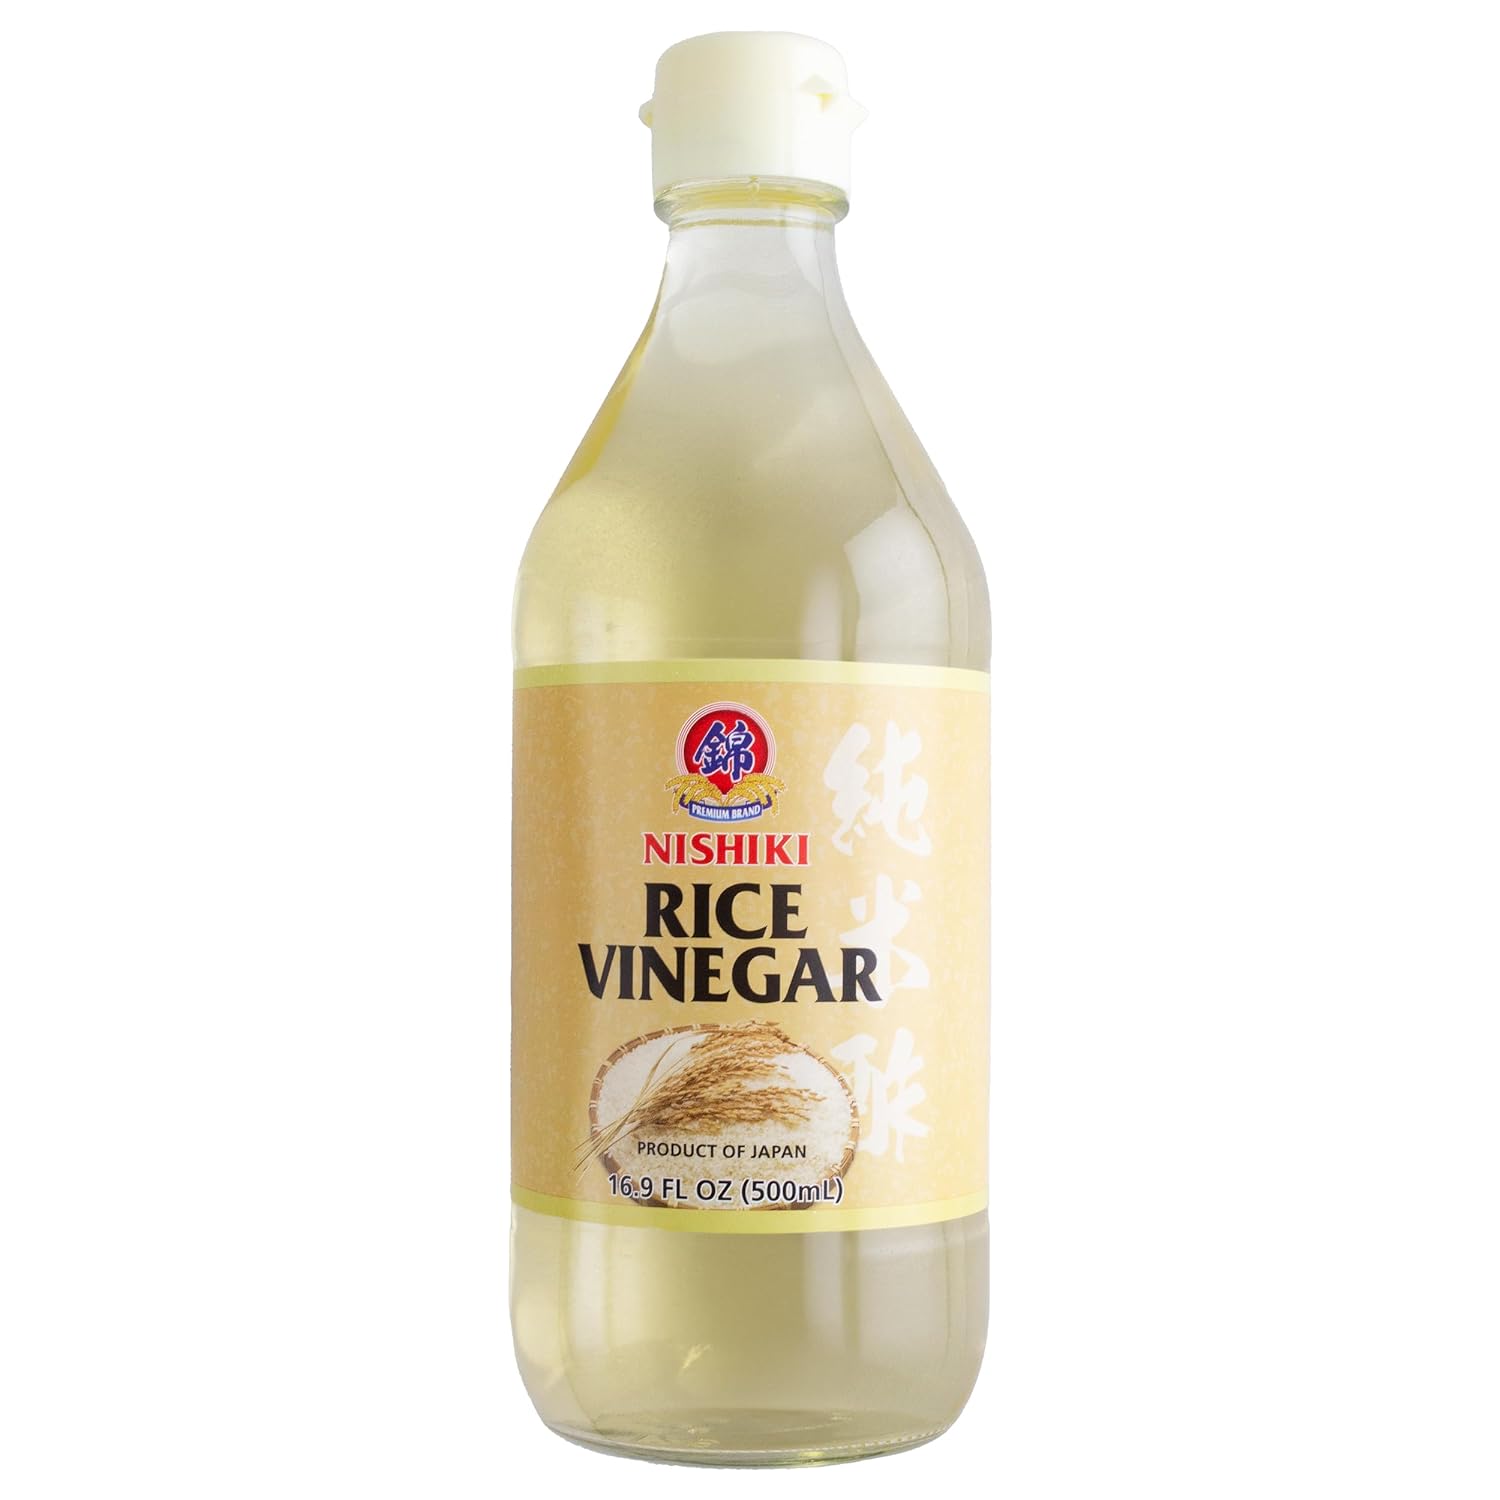 Nishiki Rice Vinegar